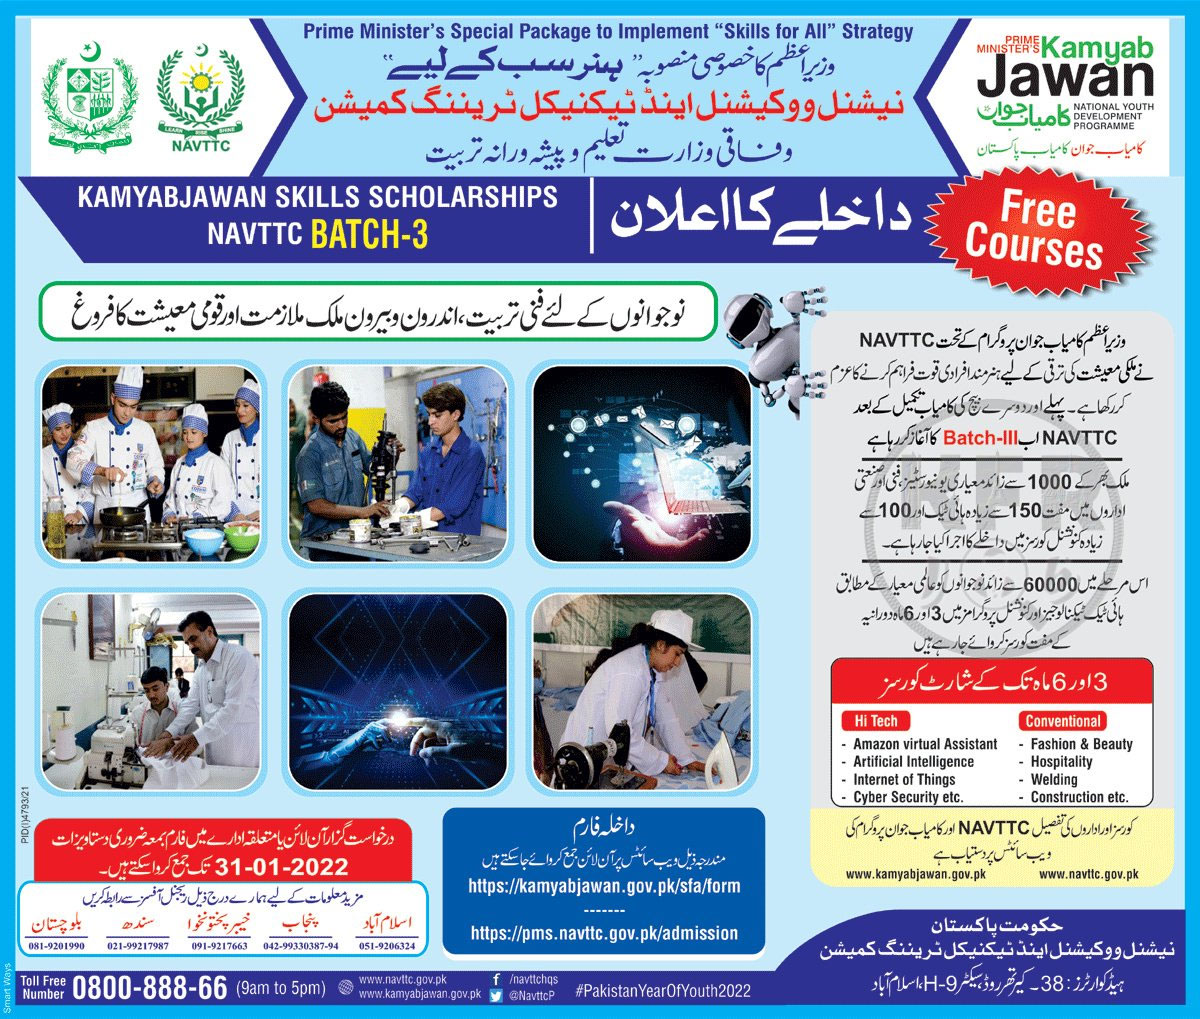 kamyab jawan skills for all scholarship program